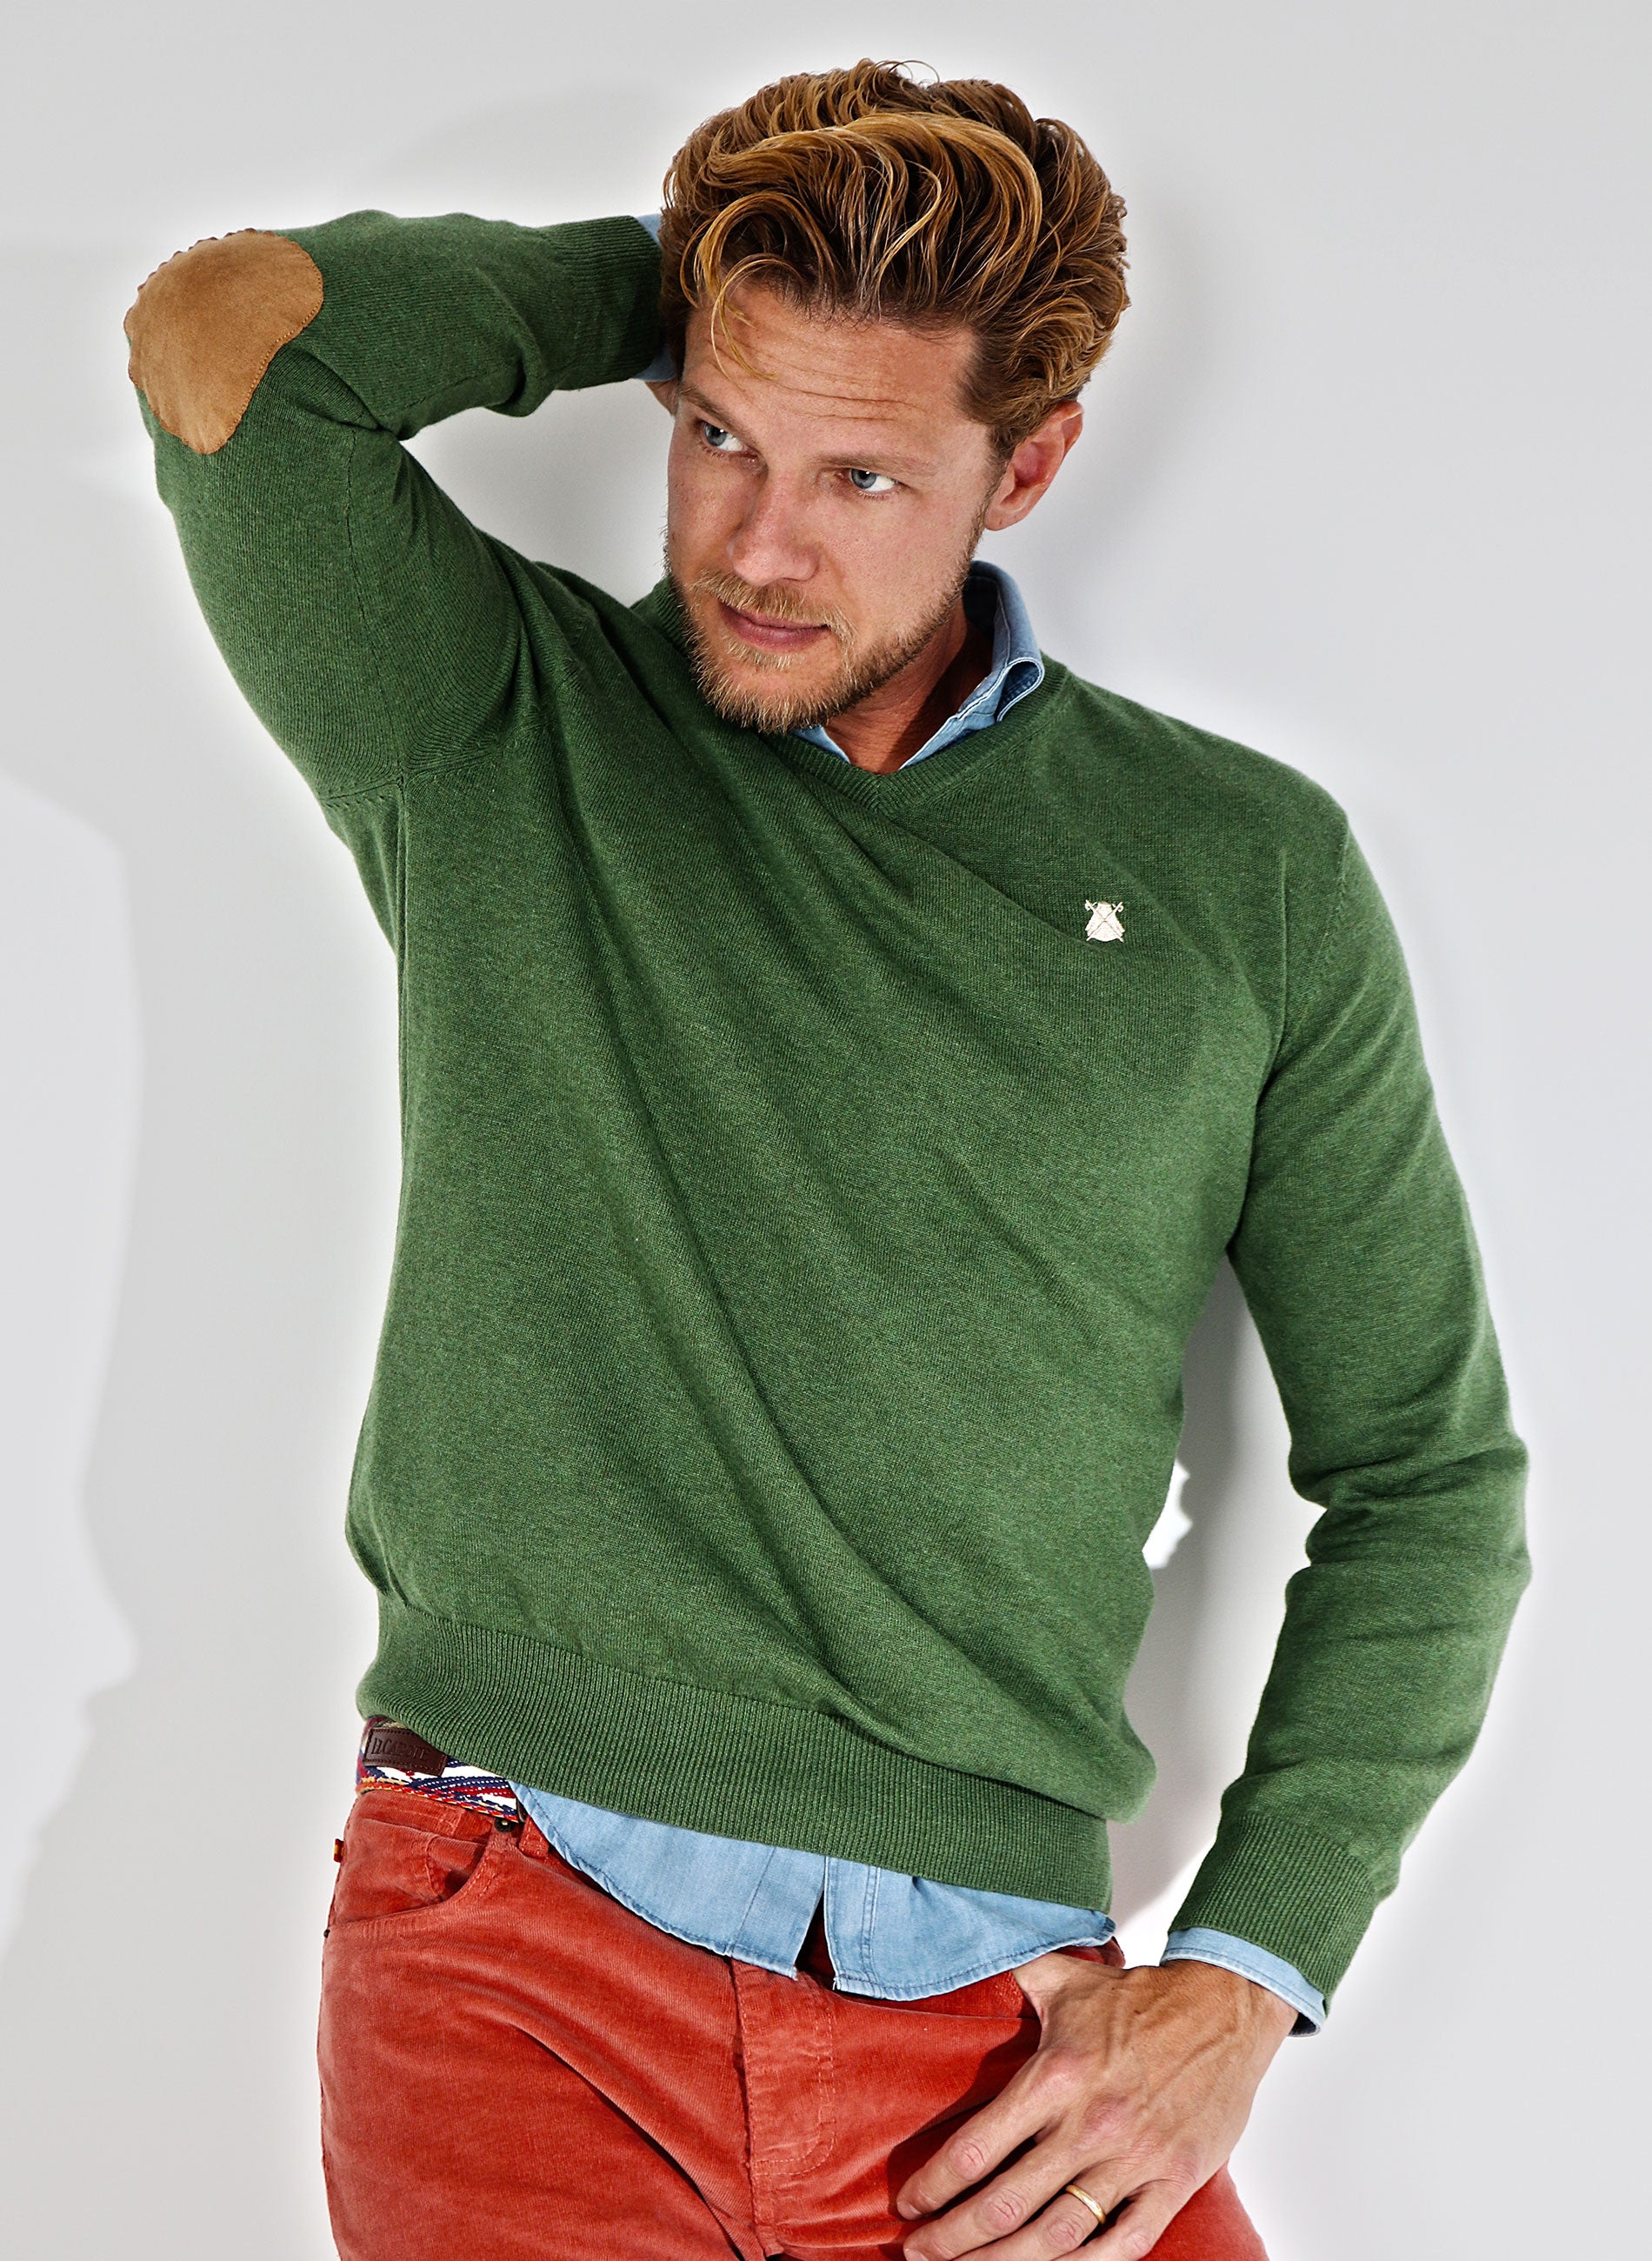 Grüner Pullover V-Ausschnitt Ellbogenschützer Man